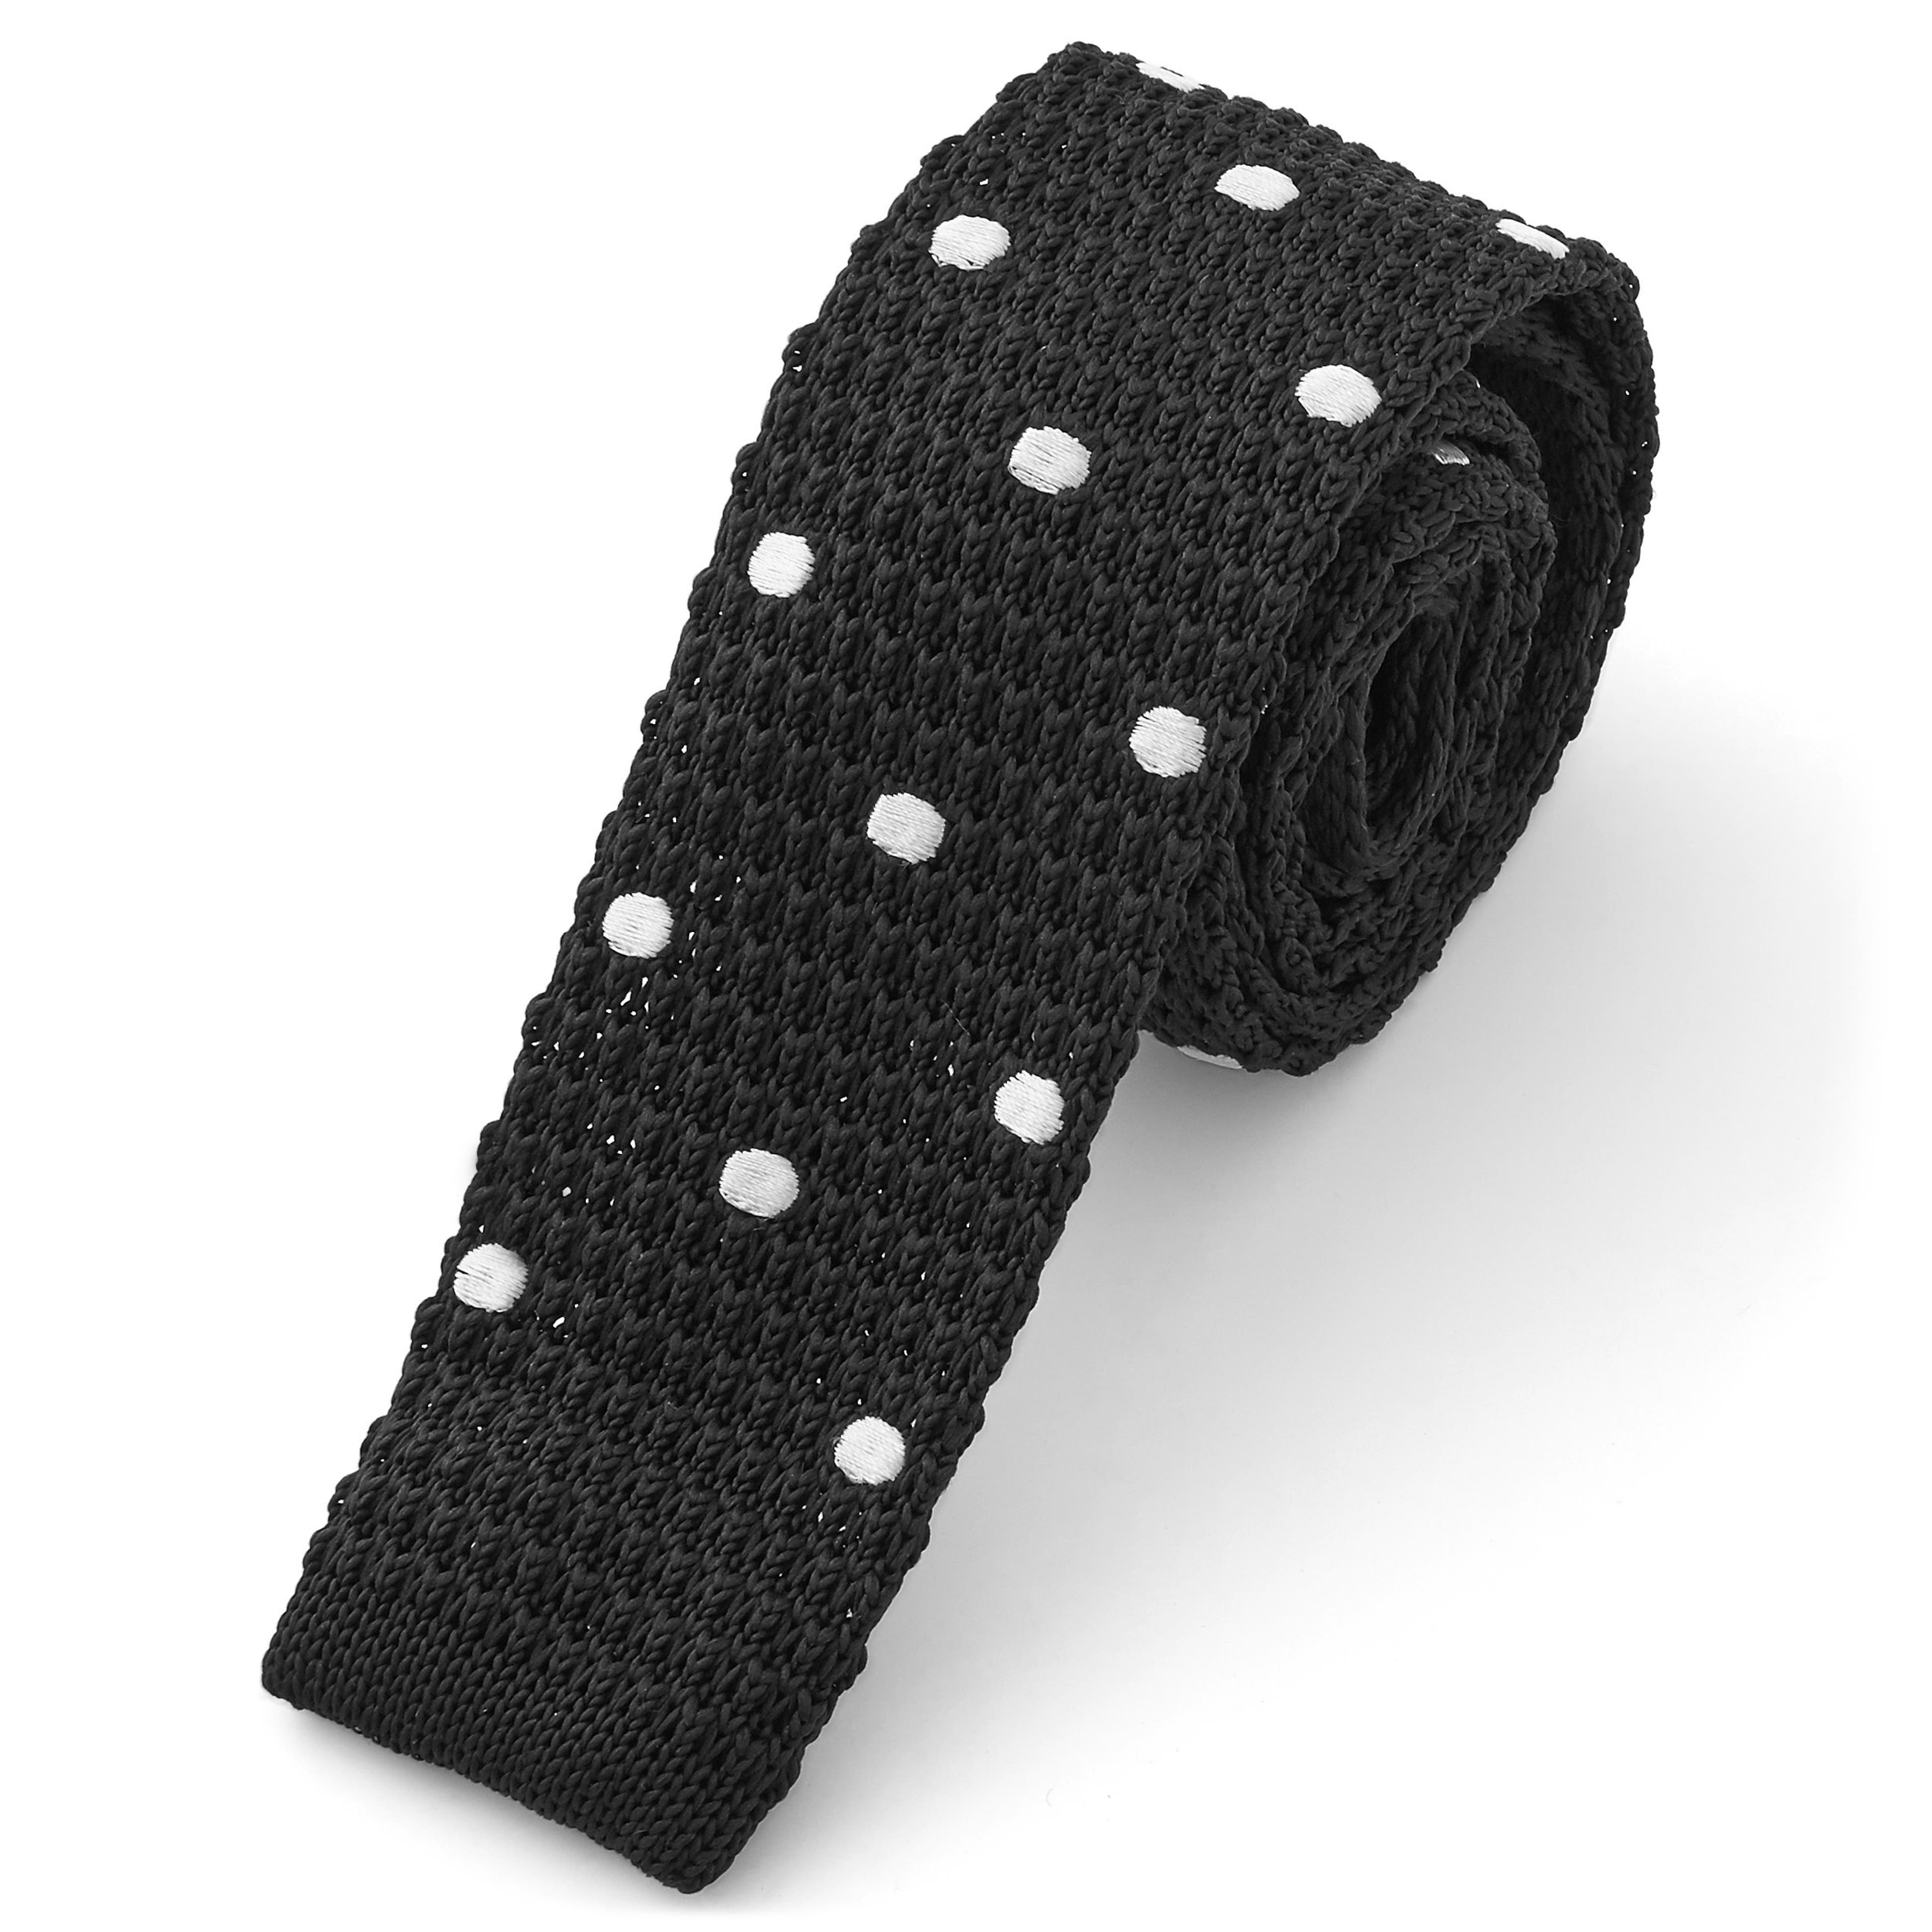 Black & White Polka Dot Knitted Tie